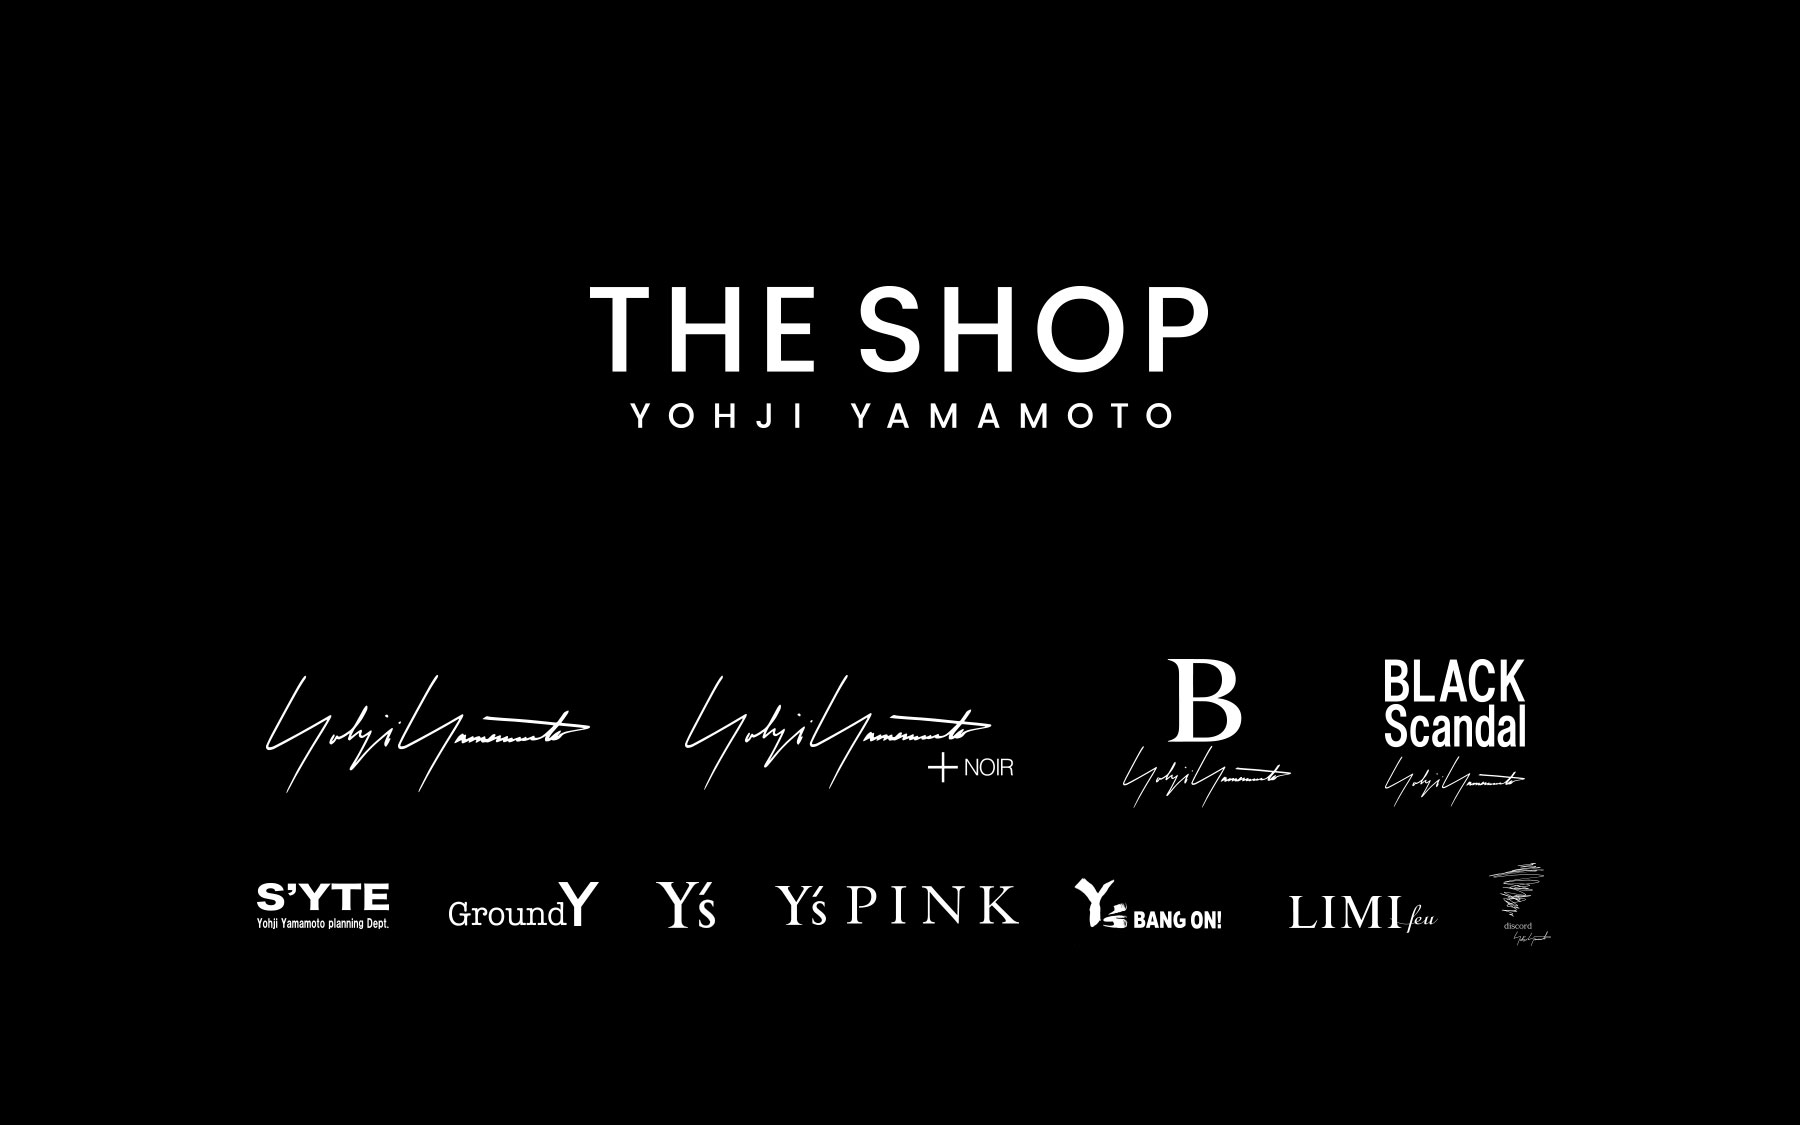 YOHJI YAMAMOTO Inc. official web store THE SHOP YOHJI YAMAMOTO will ...